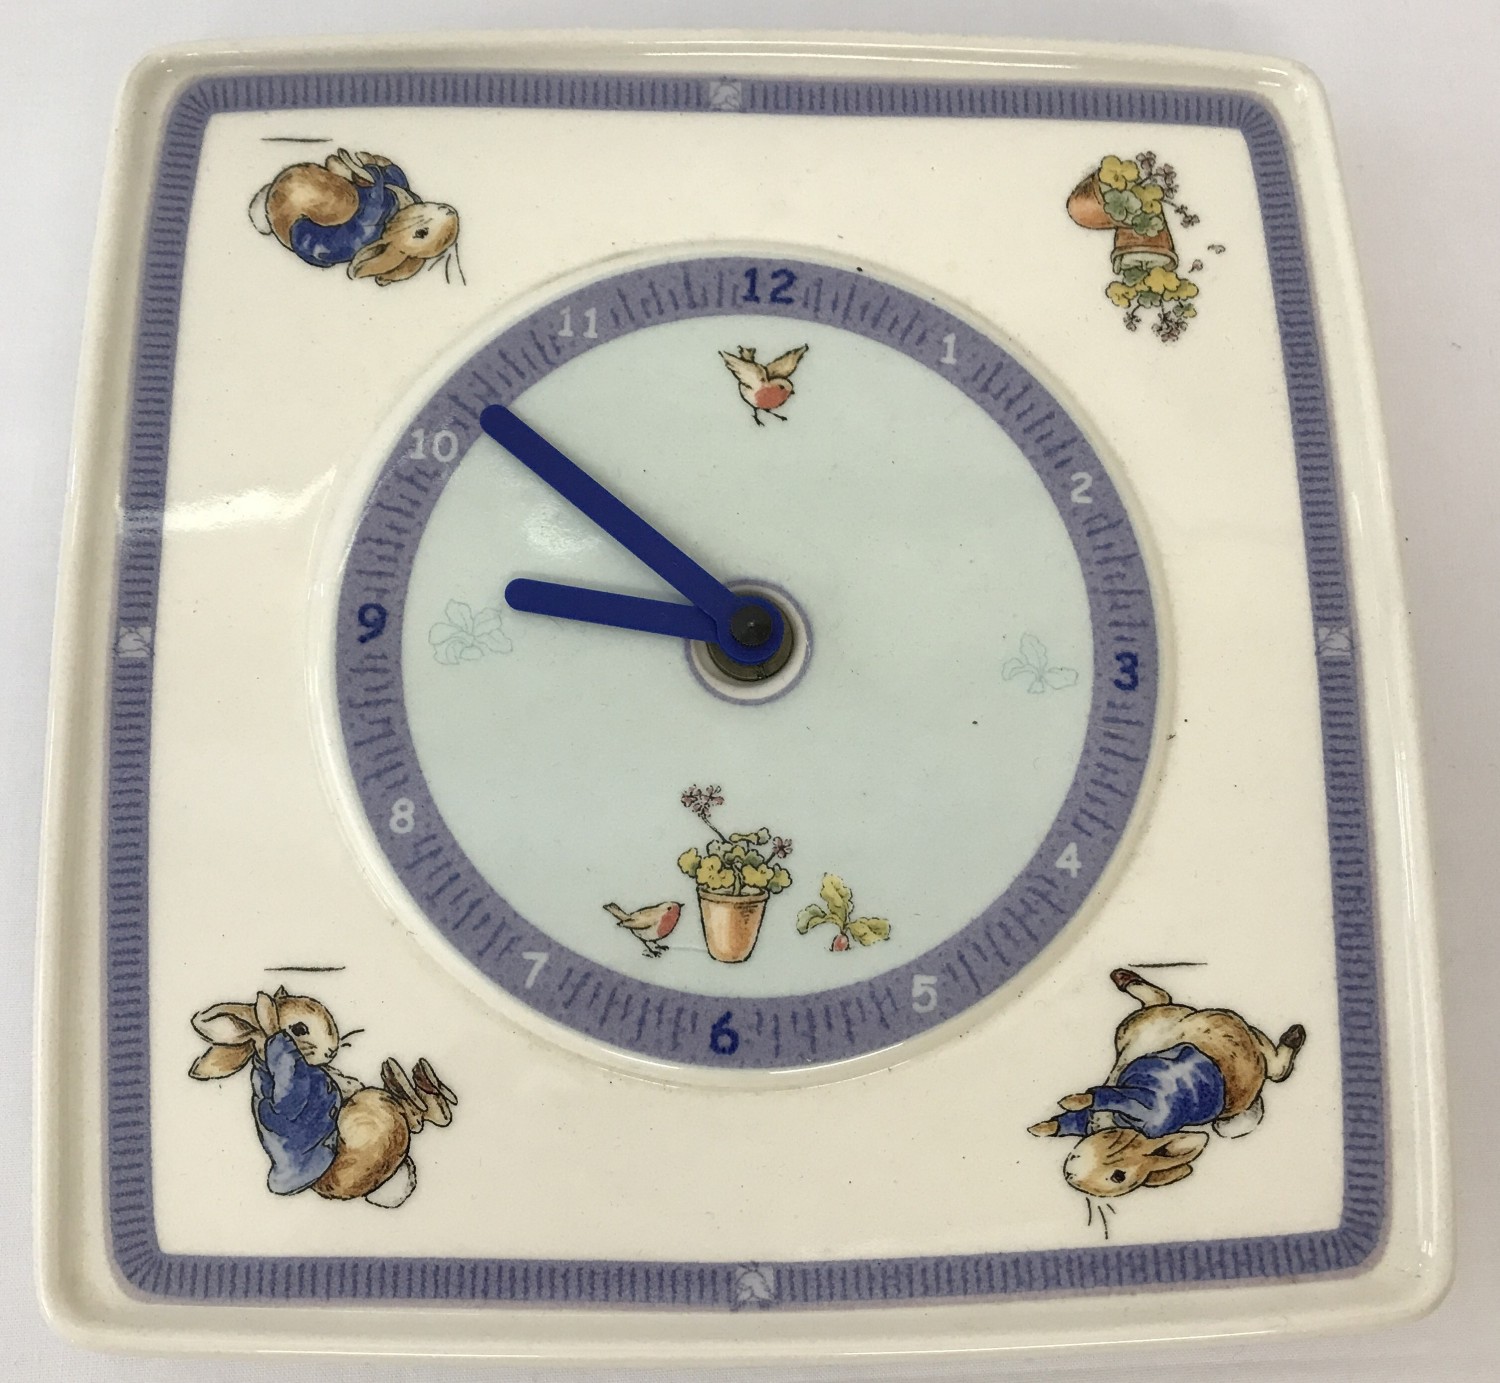 A Wedgwood Beatrix Potter's Peter Rabbit ceramic wall clock.